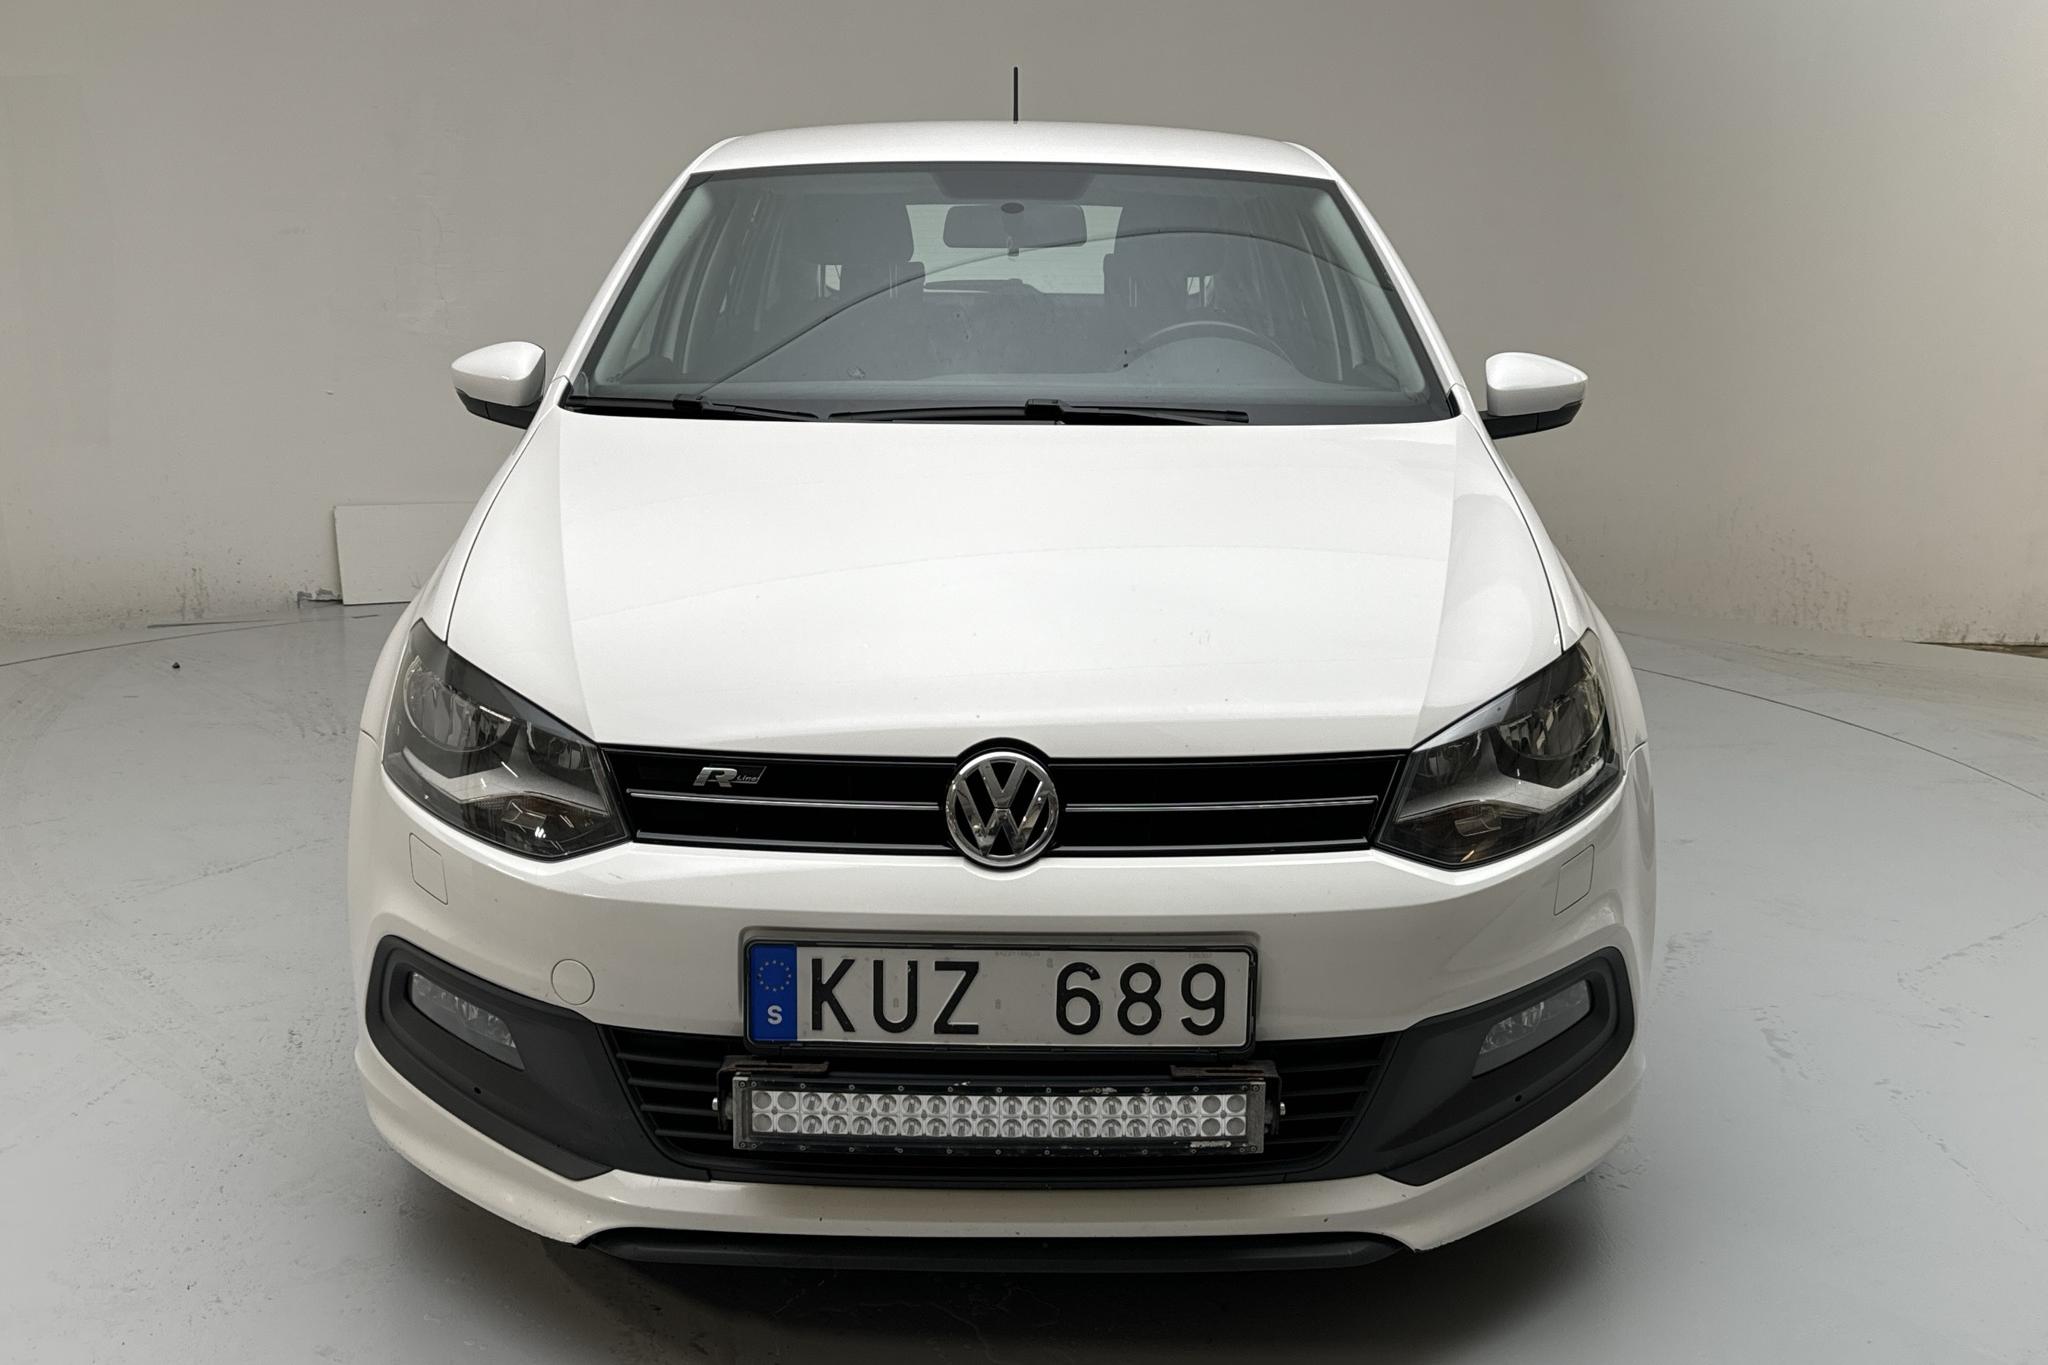 VW Polo 1.2 TSI 5dr (90hk) - 170 030 km - Käsitsi - valge - 2013